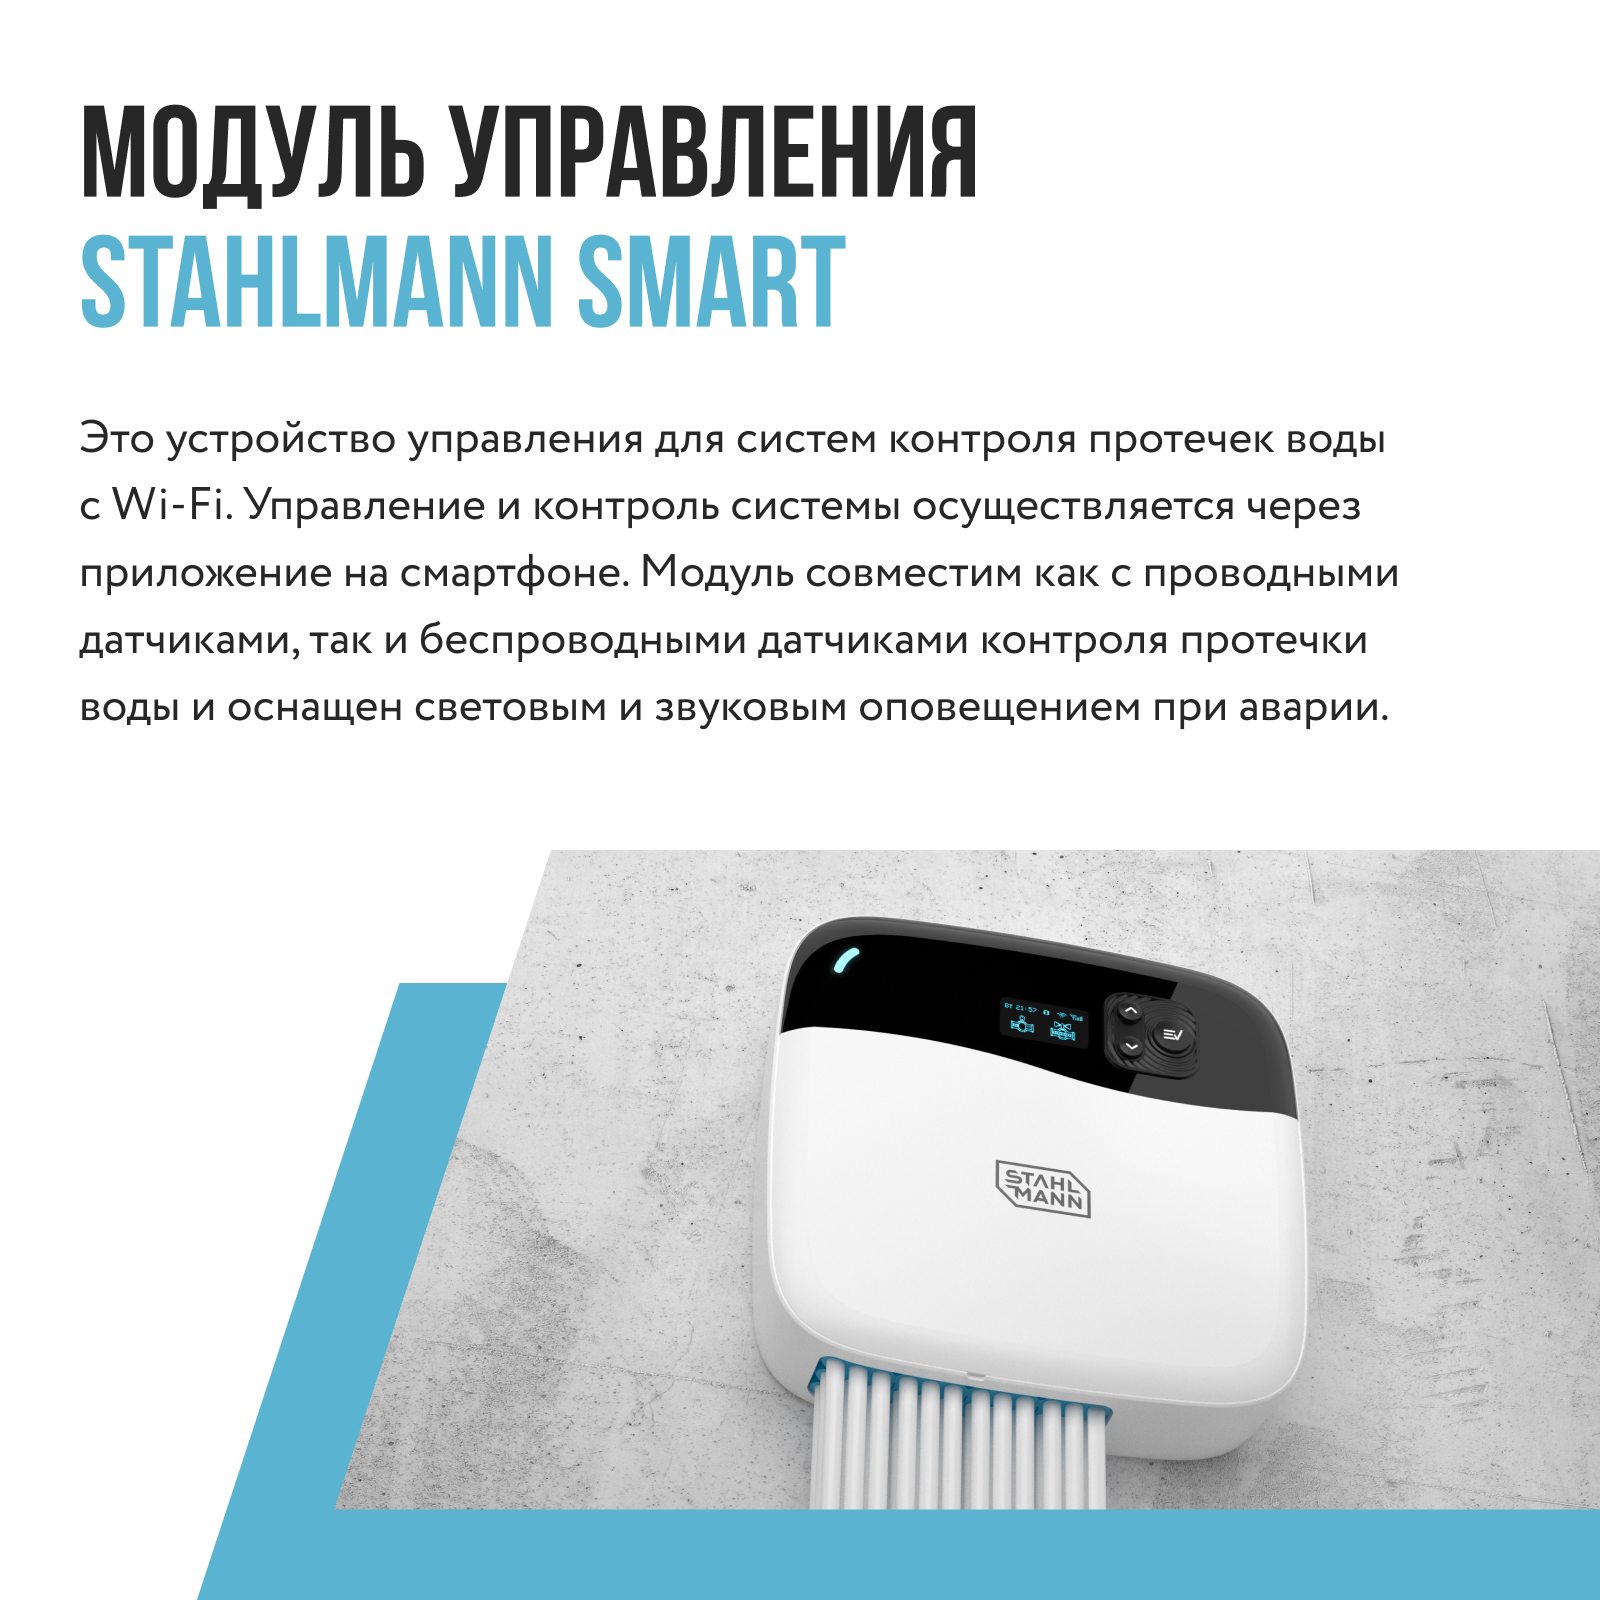 Модуль управления Stahlmann Smart